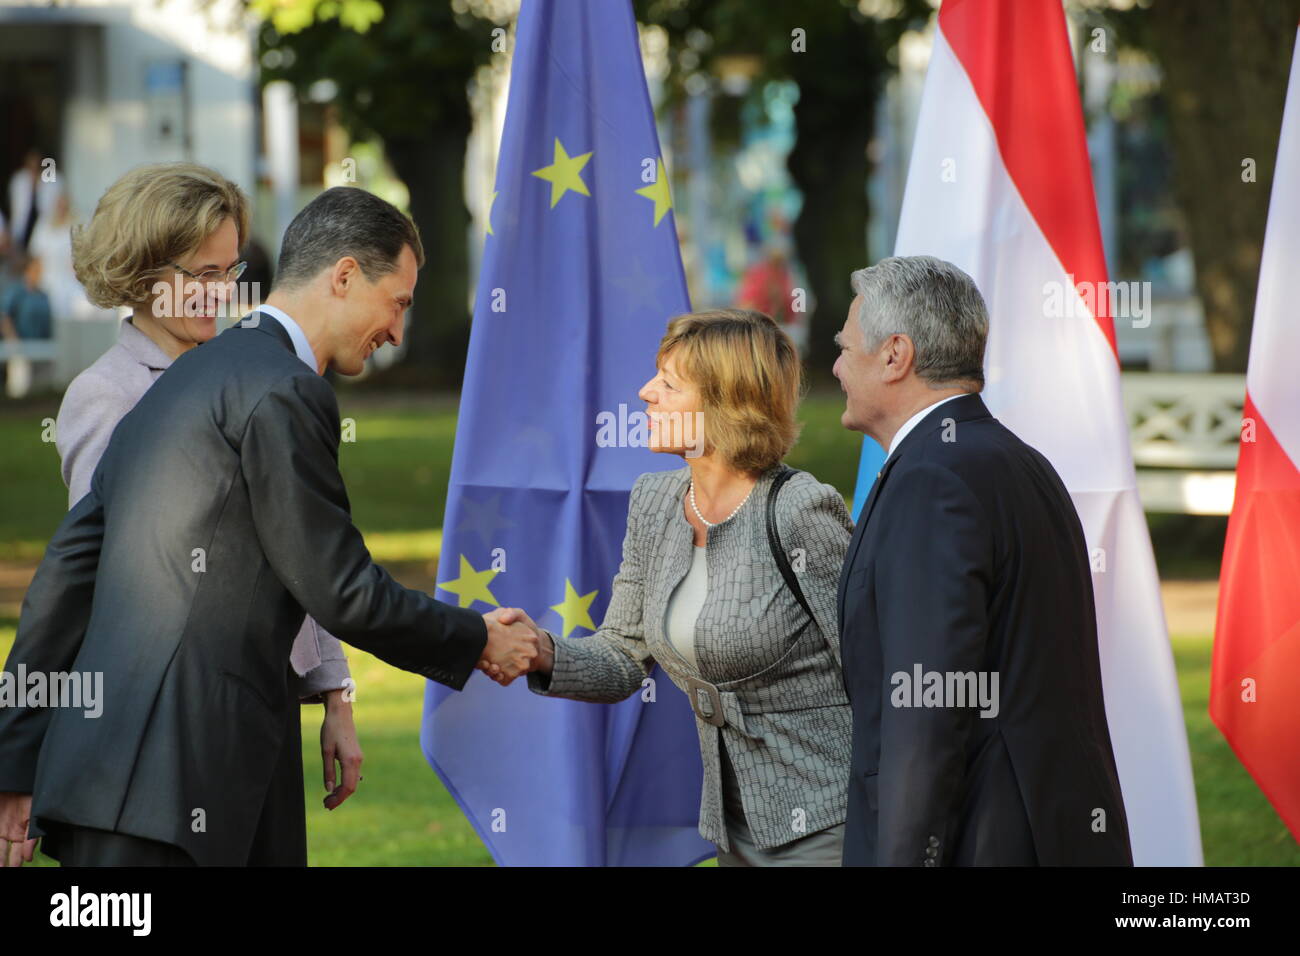 Le Prince de Liechtenstein Alois et son conjoint Sophie rencontrer le Président Gauck sur Septembre 18, 2014 à Bad Doberan, Allemagne. Banque D'Images